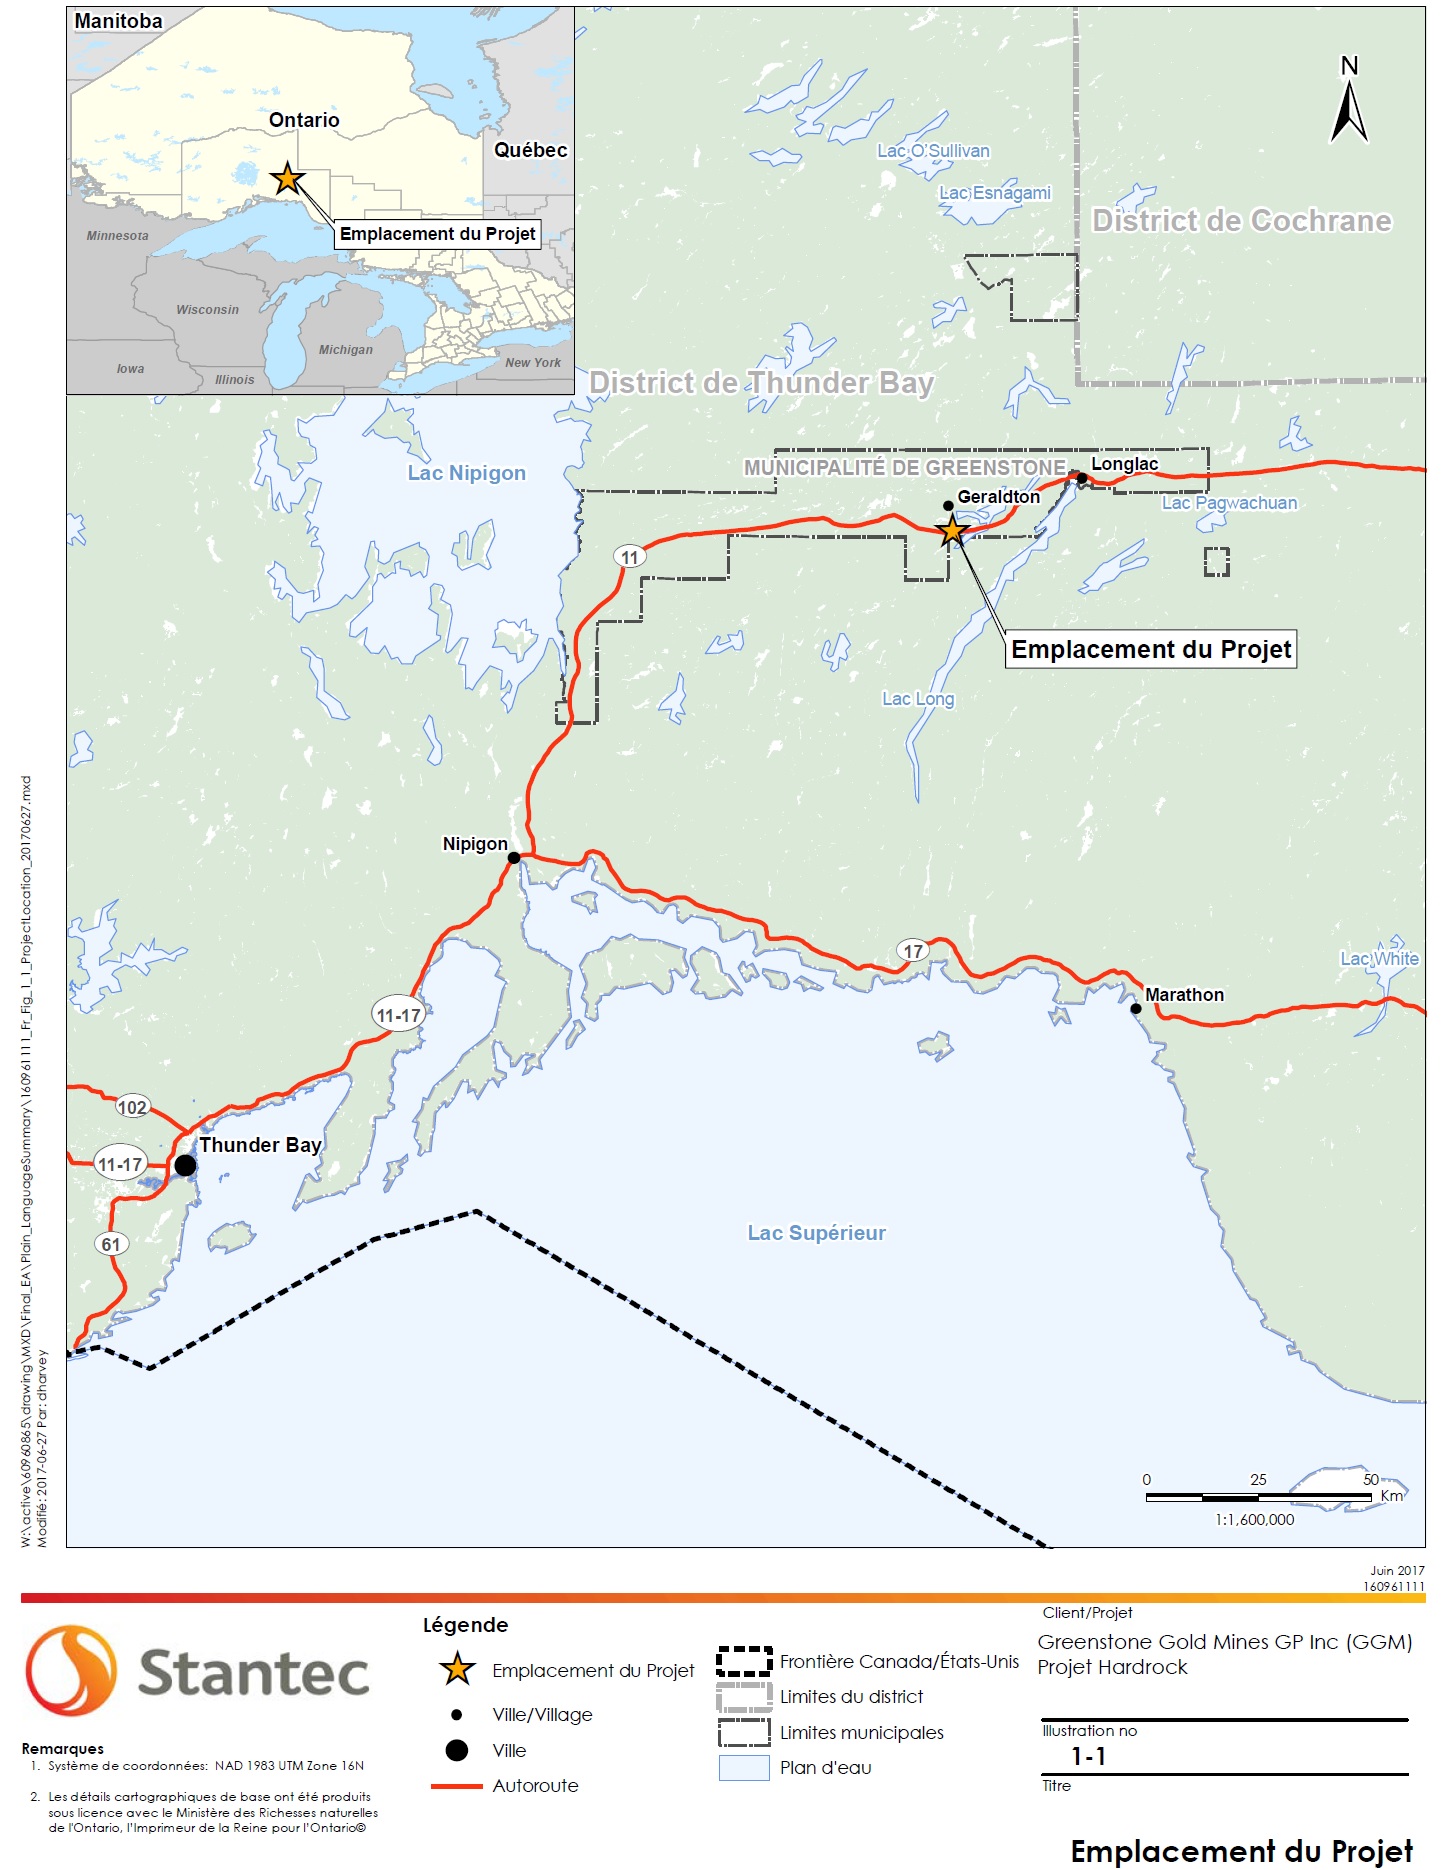 La figure 1 est une carte à l'échelle 1: 1 600 000 montrant l'emplacement général du projet minier Hardrock en Ontario. – Description ci-dessous